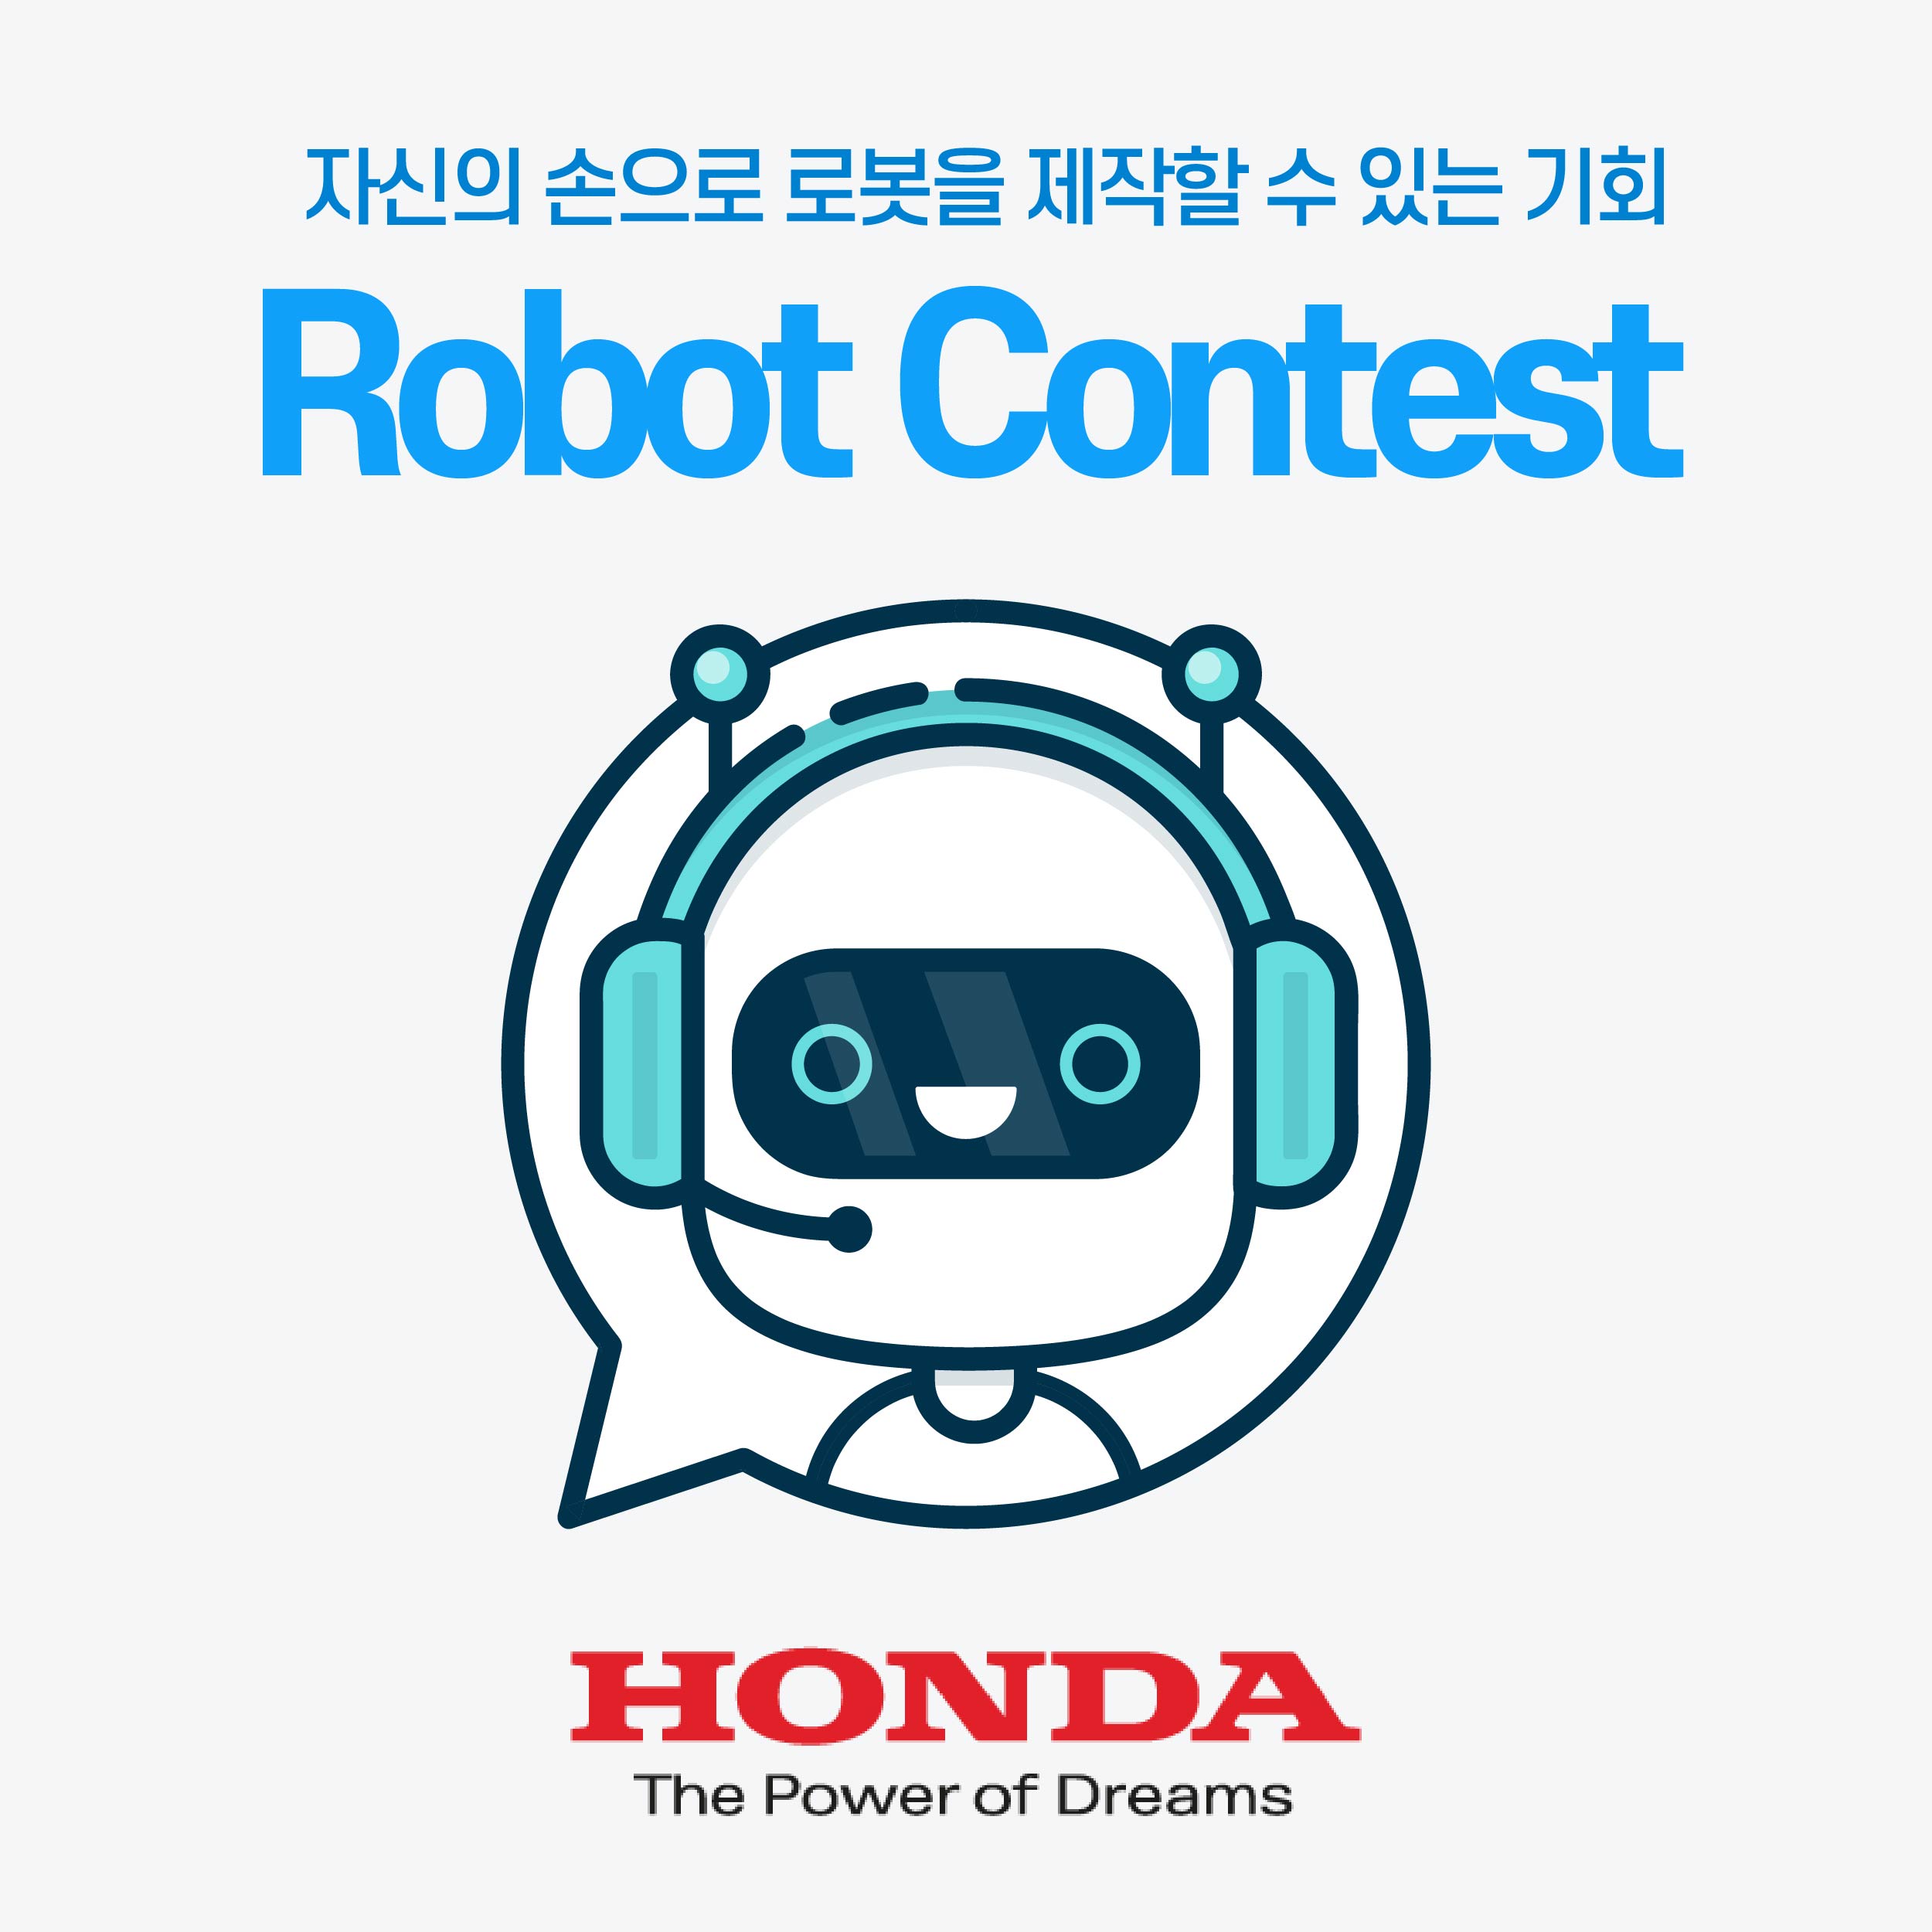 자신의 손으로 로봇을 제작할 수 있는 기회 robot contest